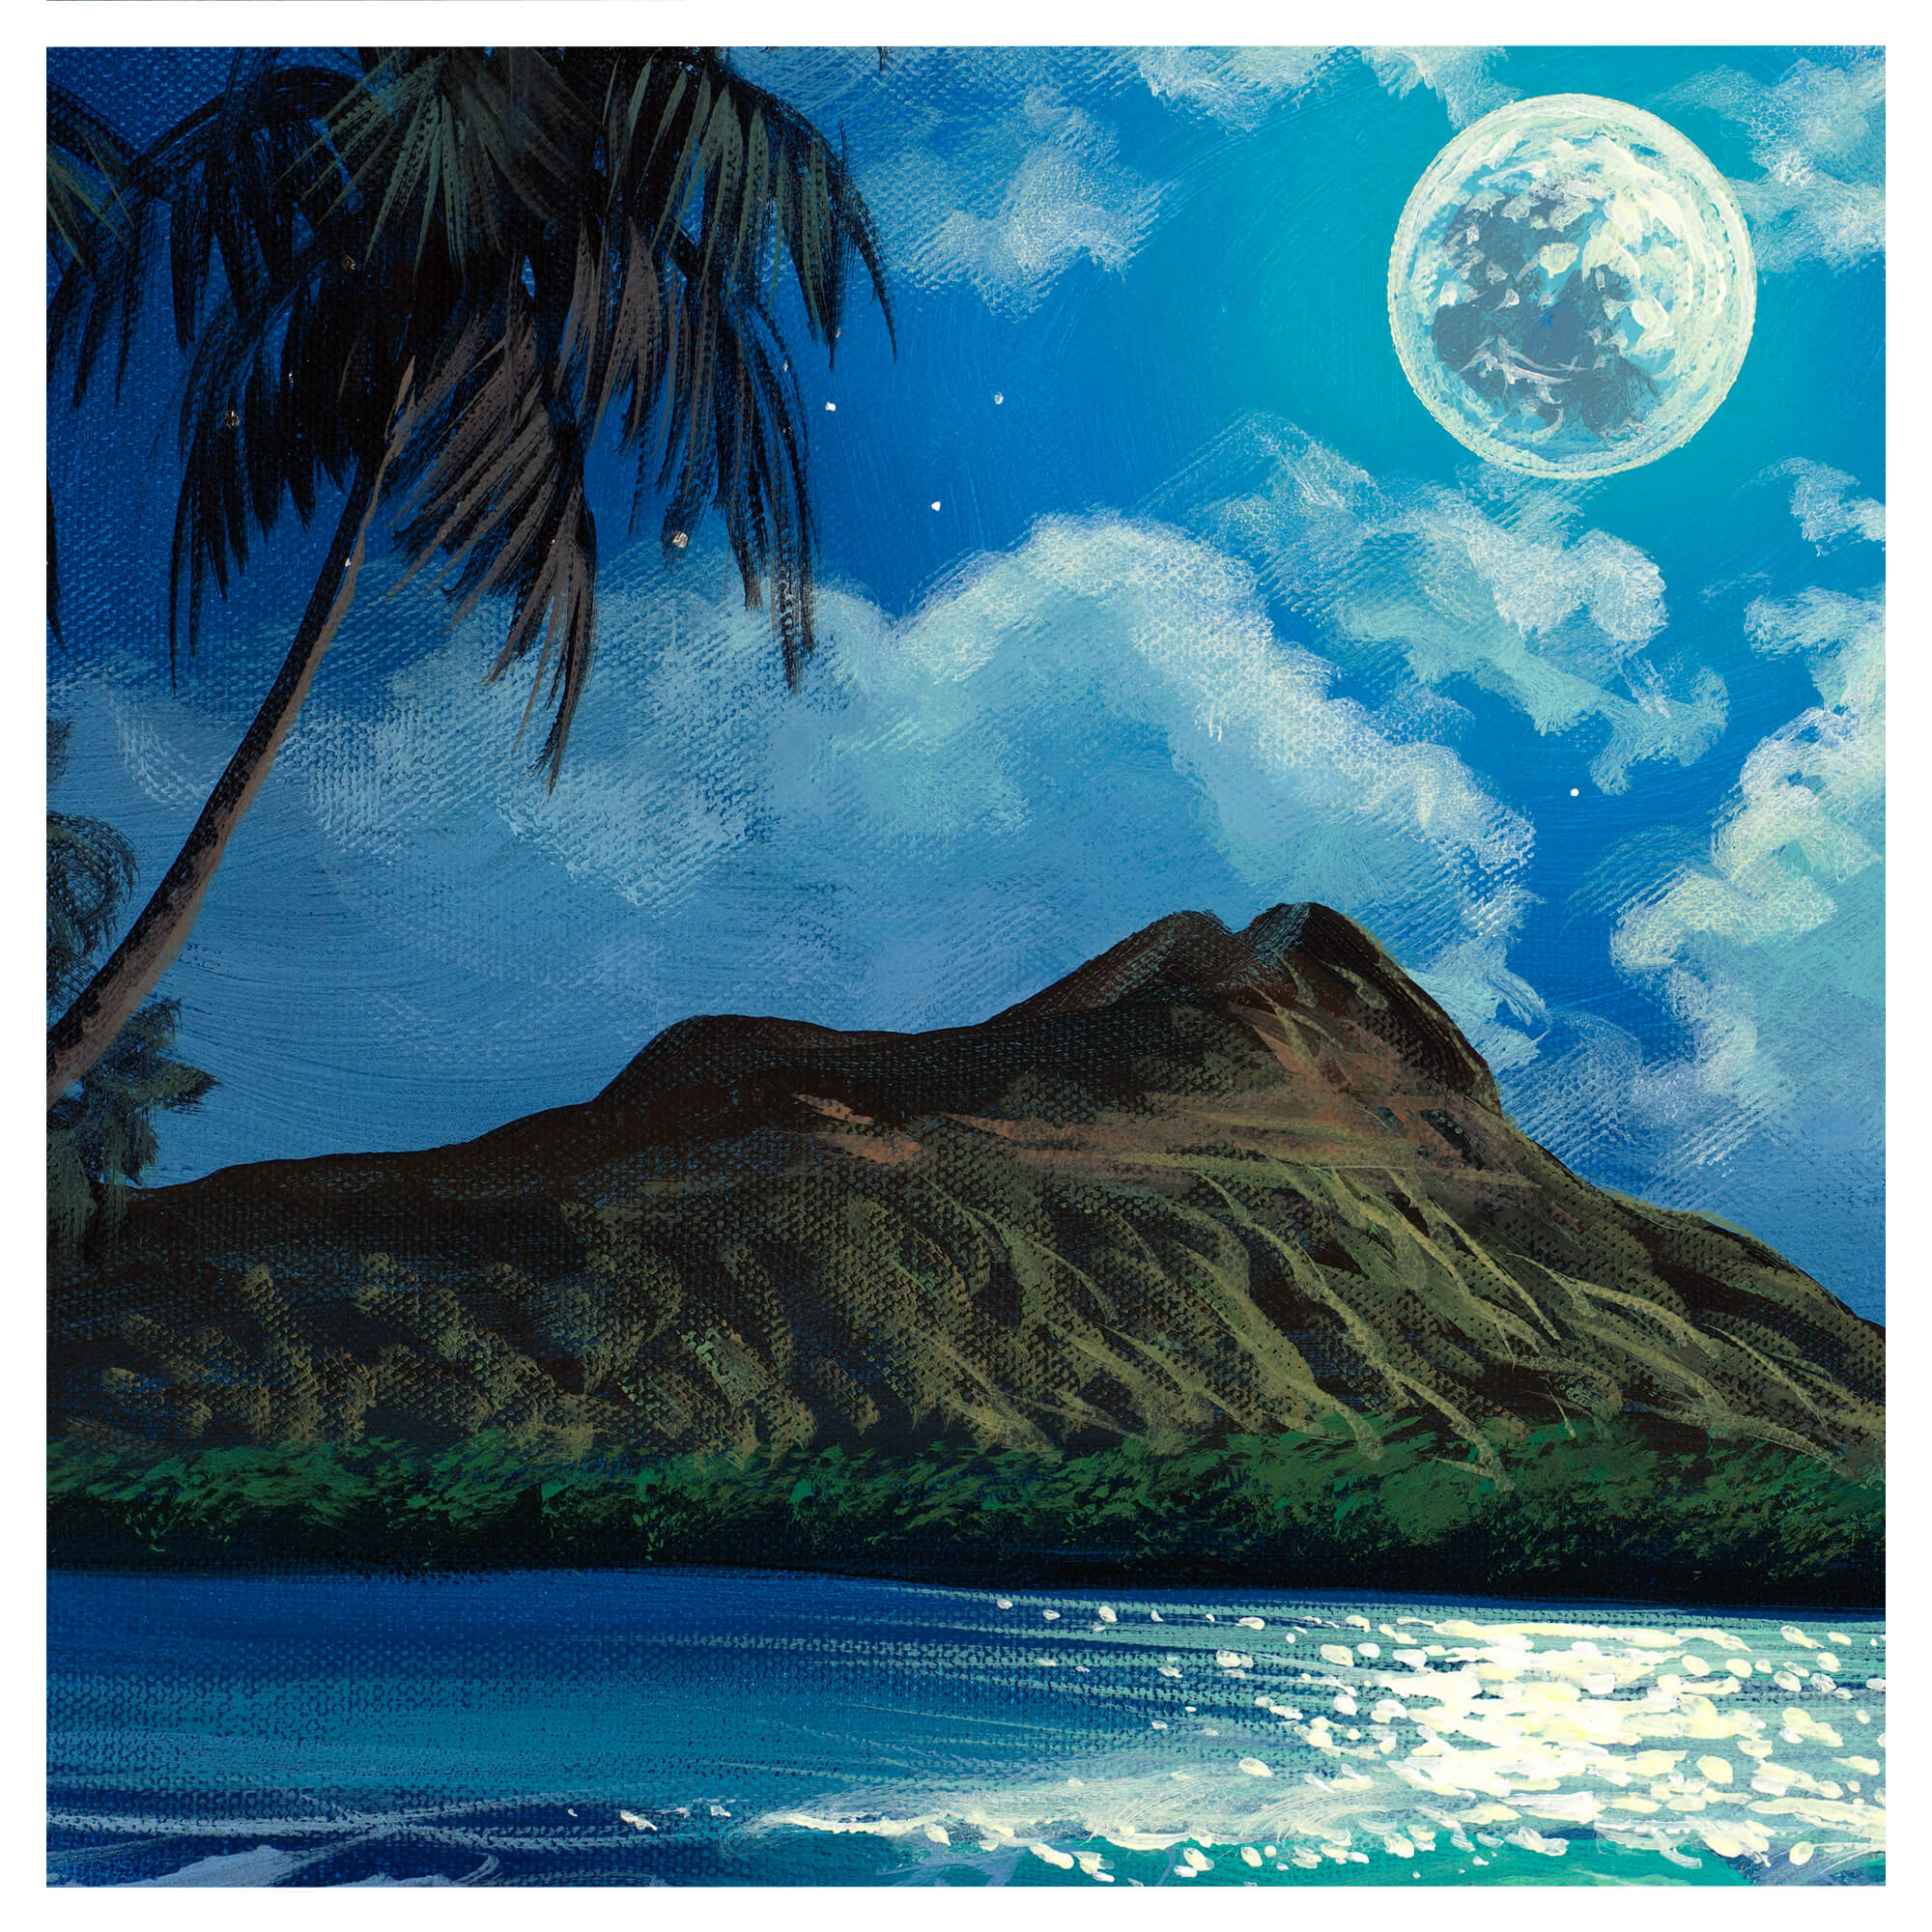 Diamond Head and full moon by Hawaii artist Walfrido Garcia